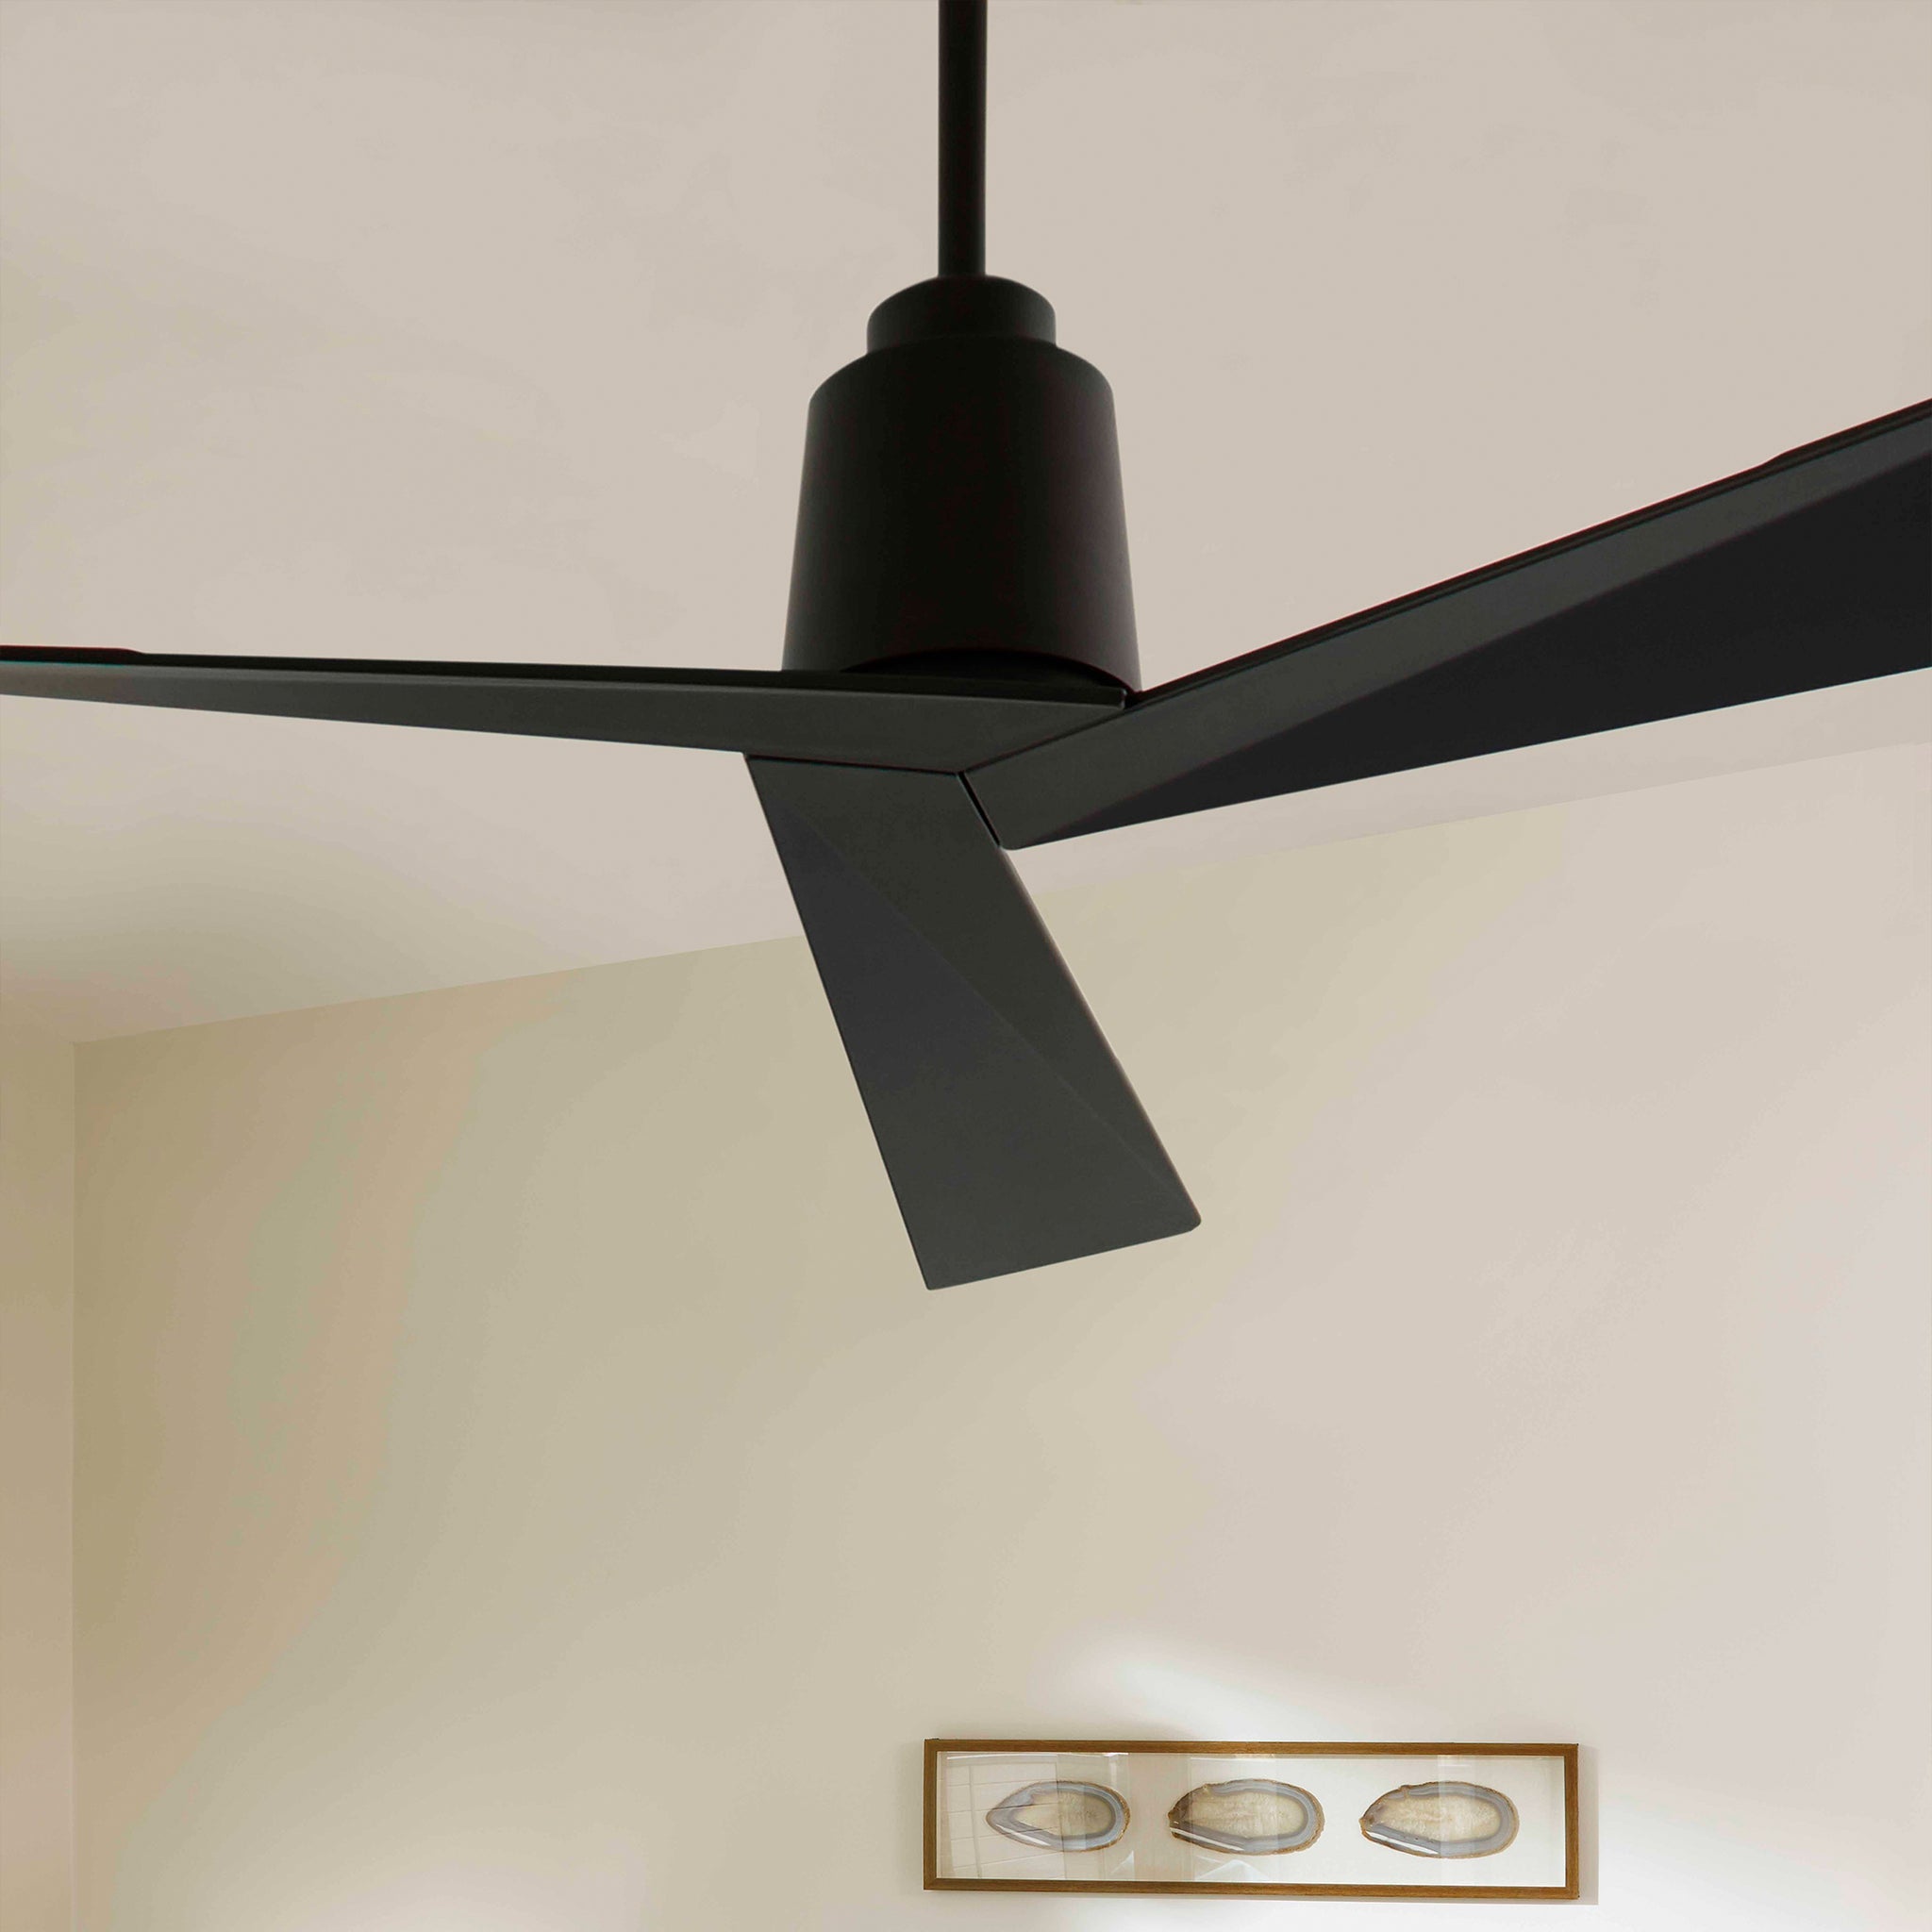 Oxygen Dynamo 3-113-15 Modern Ceiling Fan 54 Inch Damp Rated - Black